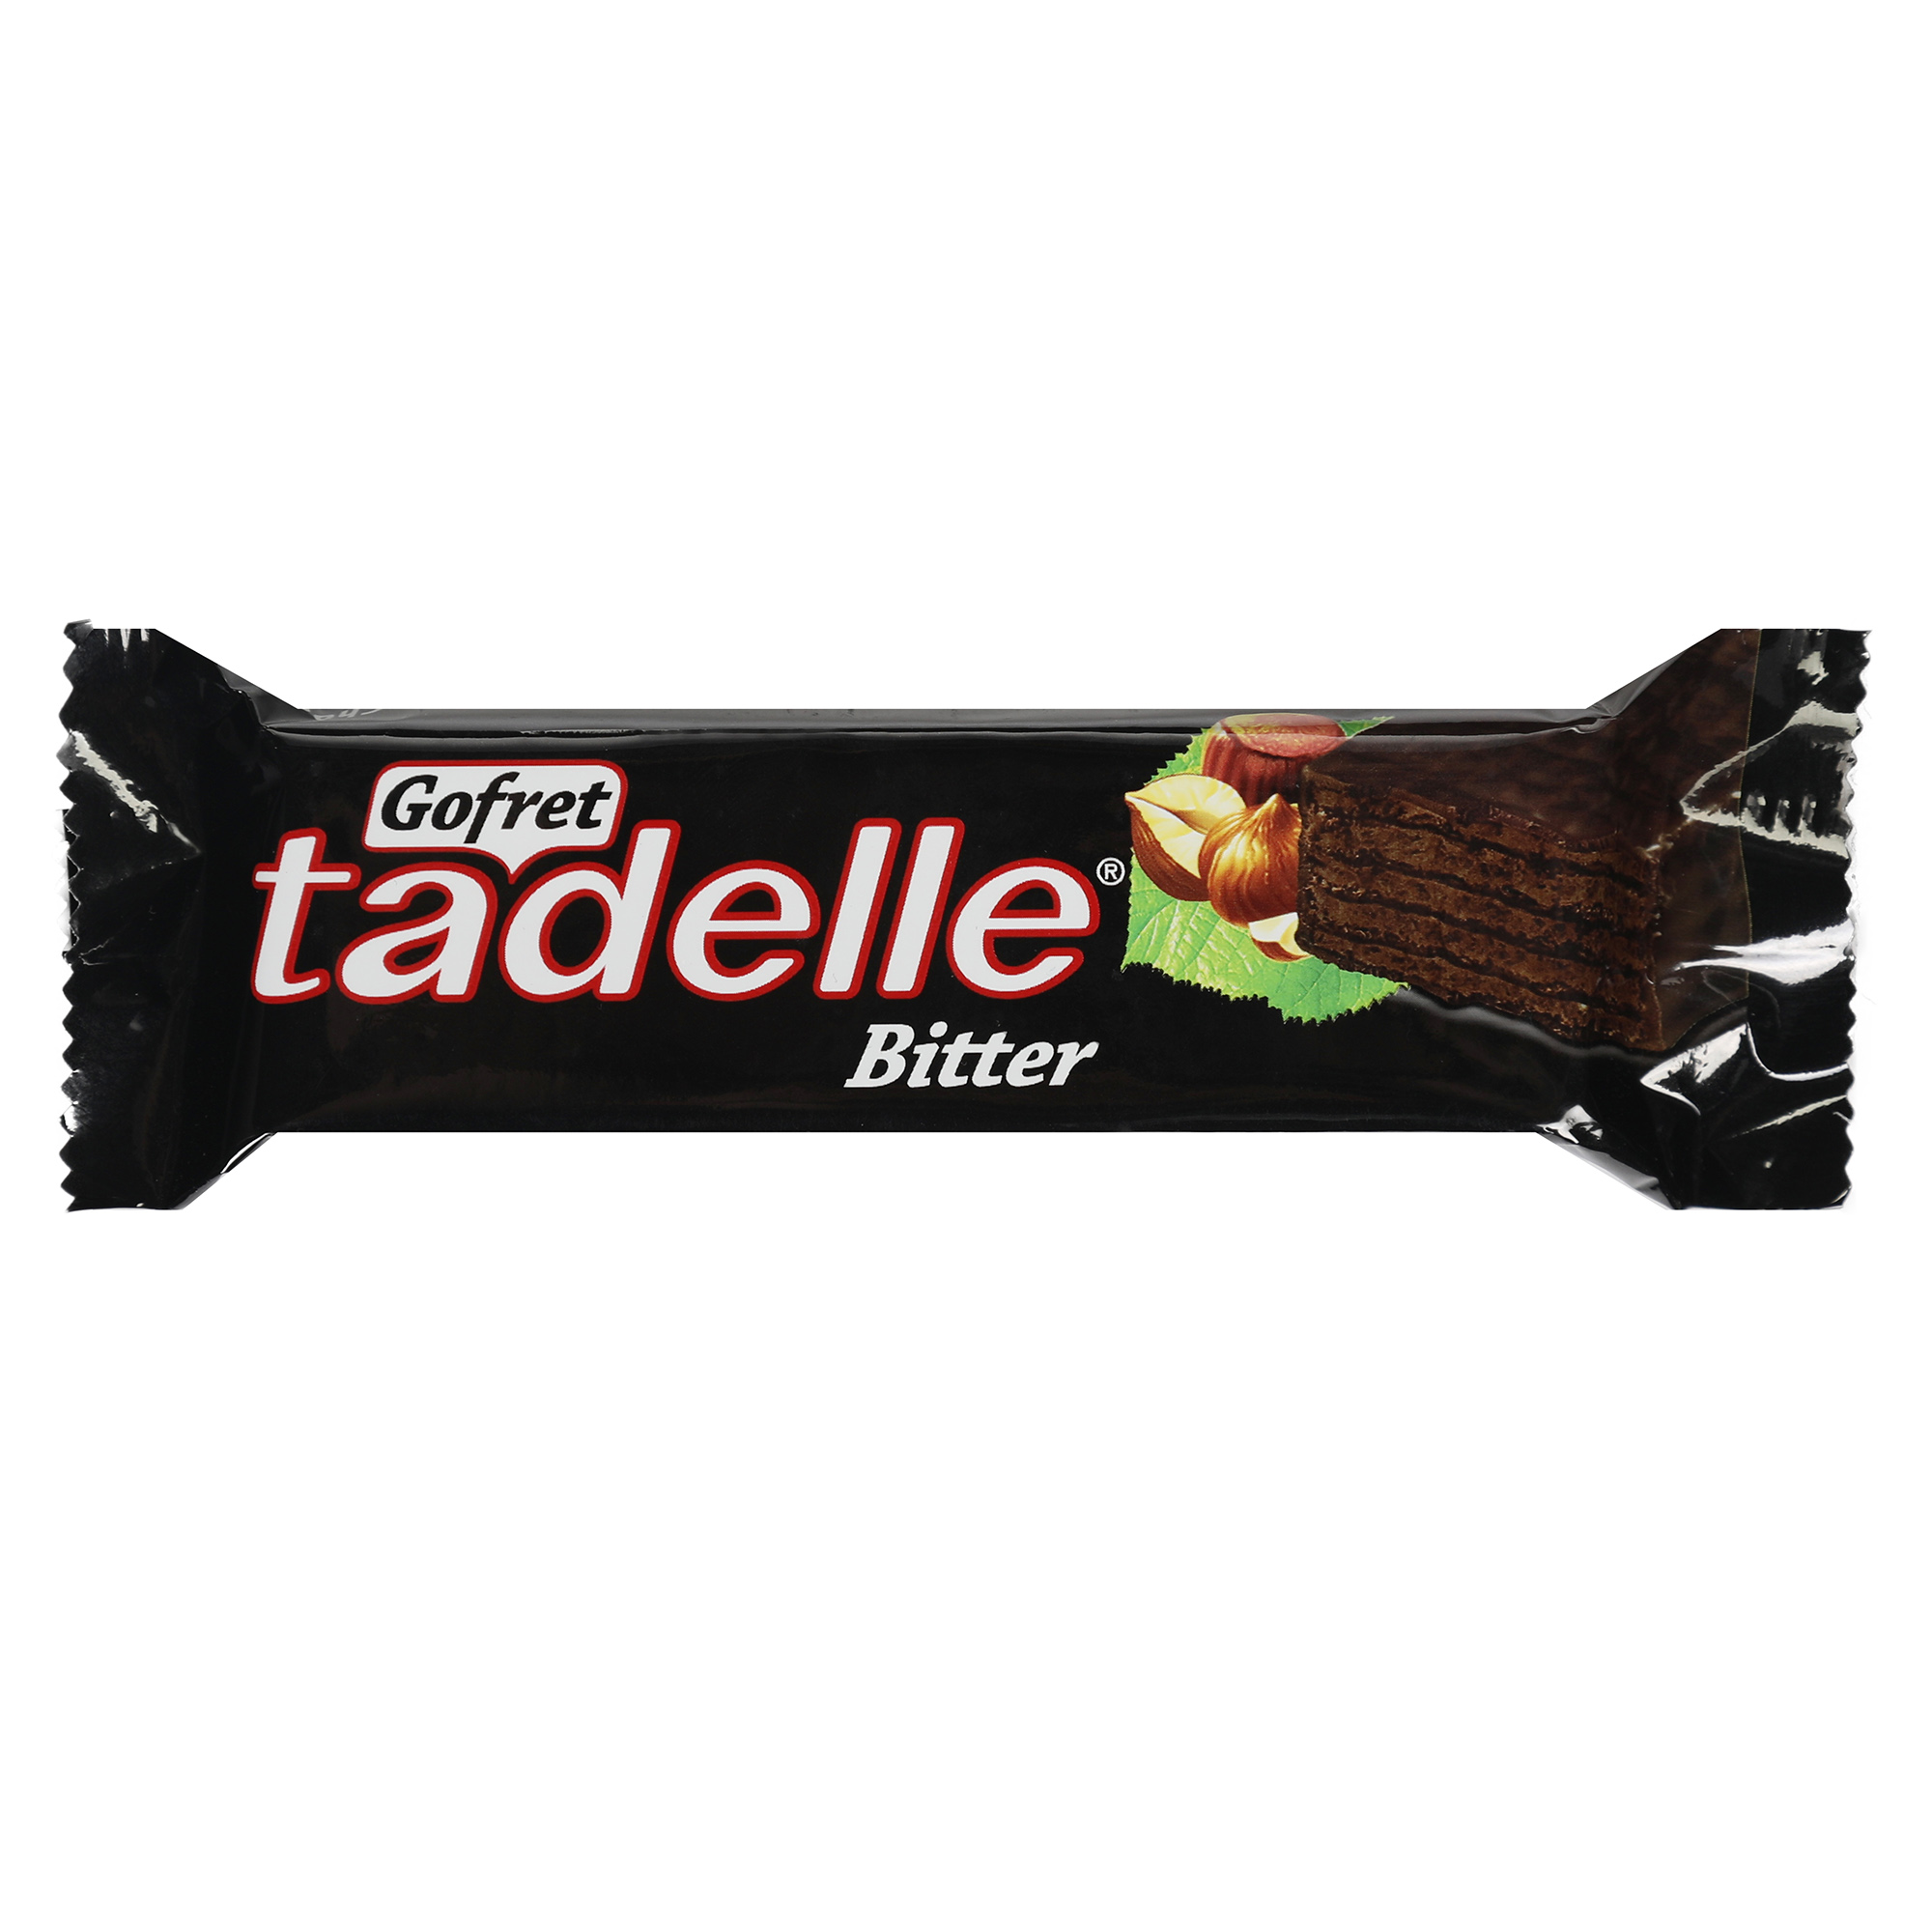 Вафли Sarelle с ореховым кремом в темном шоколаде, 35 г вафли fiorella с ореховым кремом в белом шоколаде 20 г